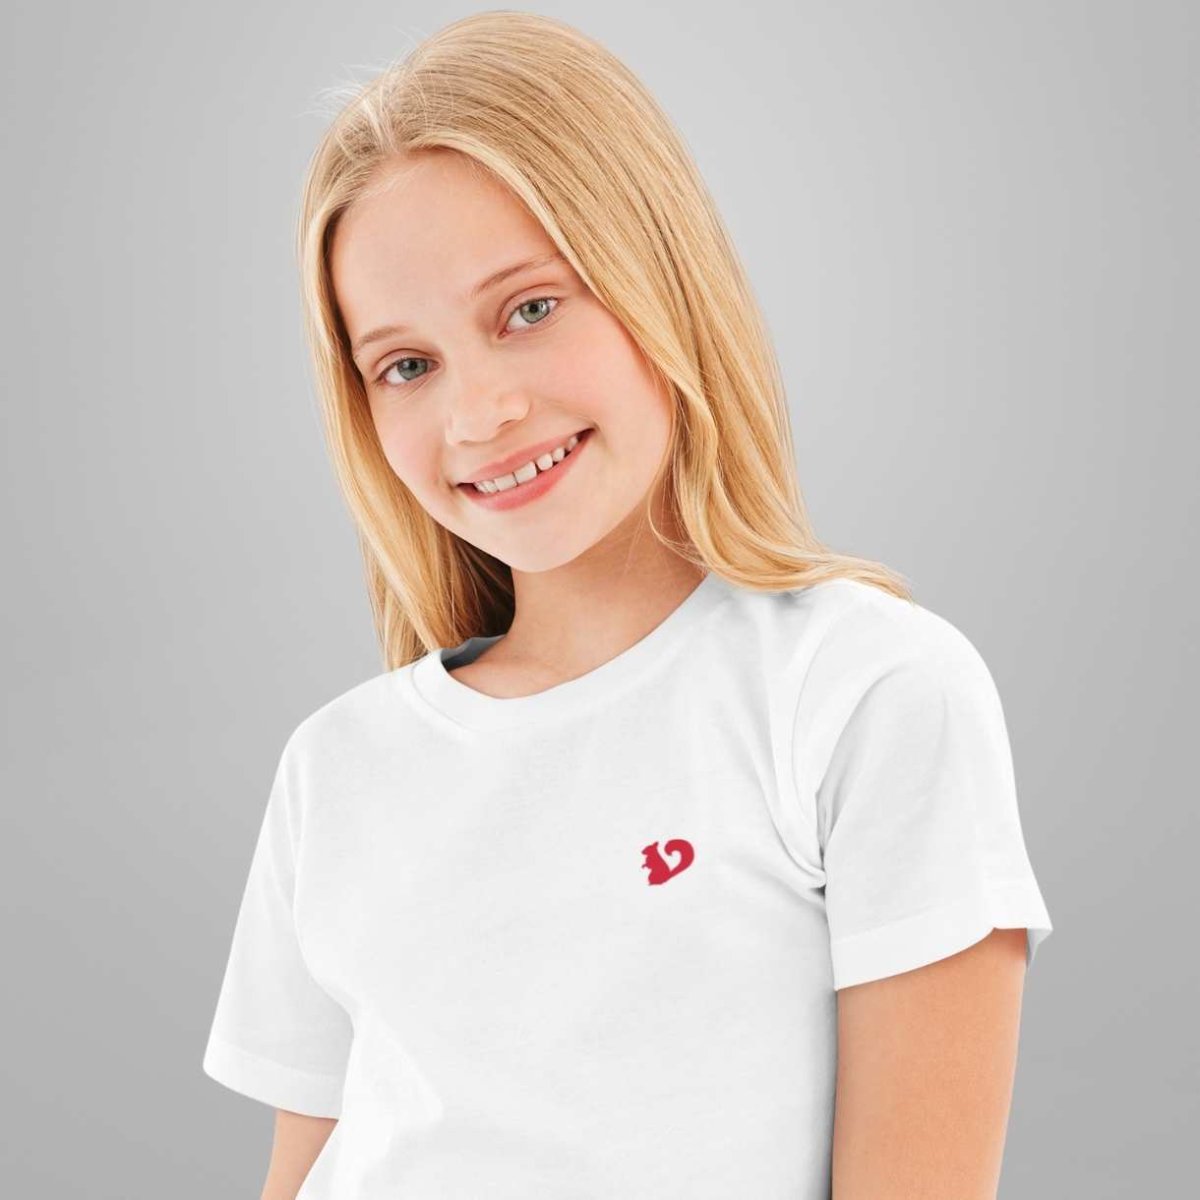 Kartofler flertal alien SCIURUS KIDS klassiske T-shirt til piger i hvid med rødt broderet logo -  Pige - Sciurus.dk